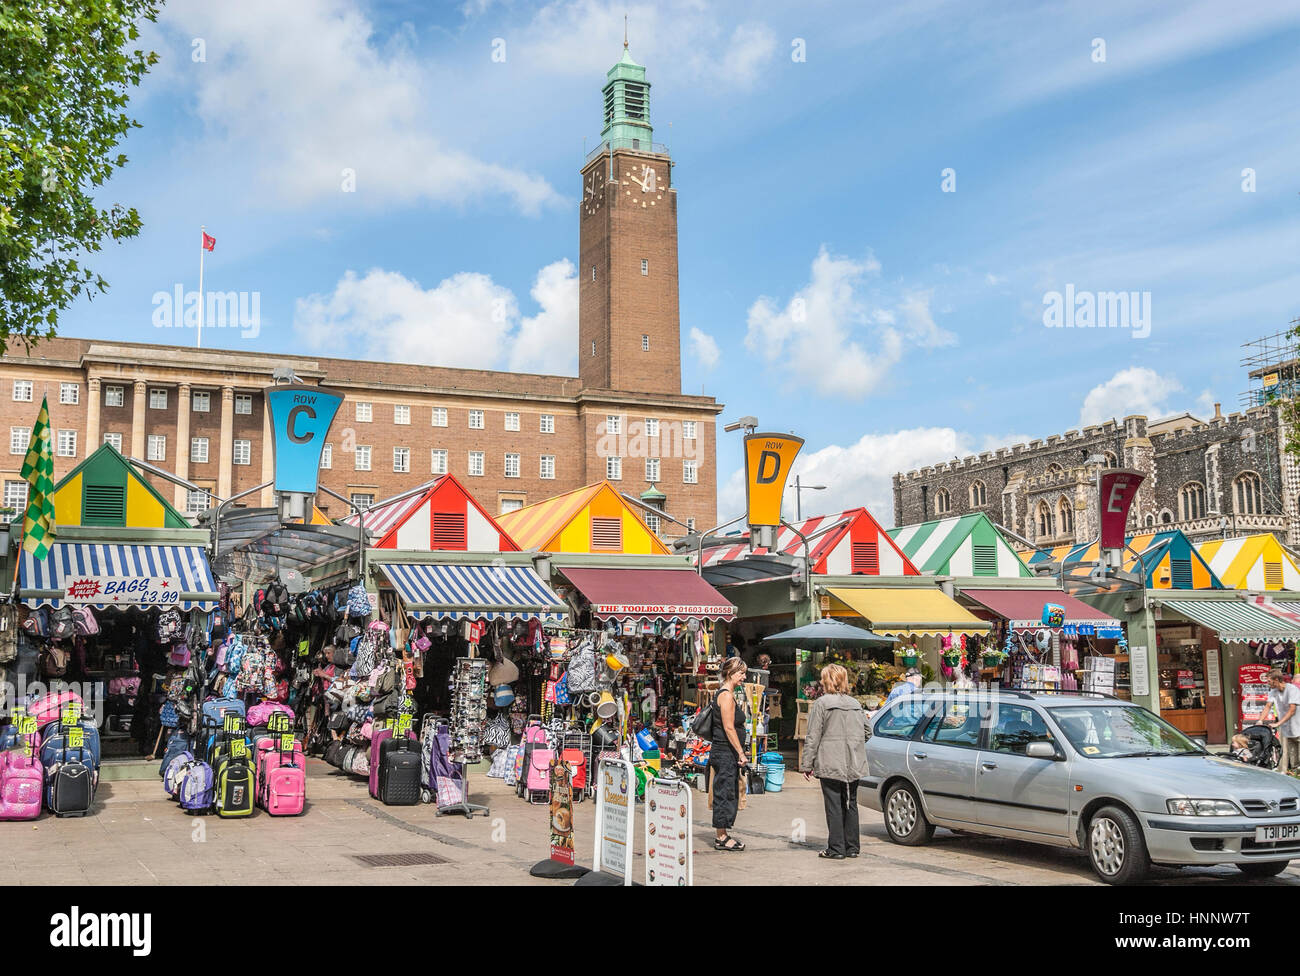 Le marché se bloque sur la place du marché de Norwich avec l'hôtel de ville en arrière-plan, Norfolk, Angleterre, Royaume-Uni. Banque D'Images